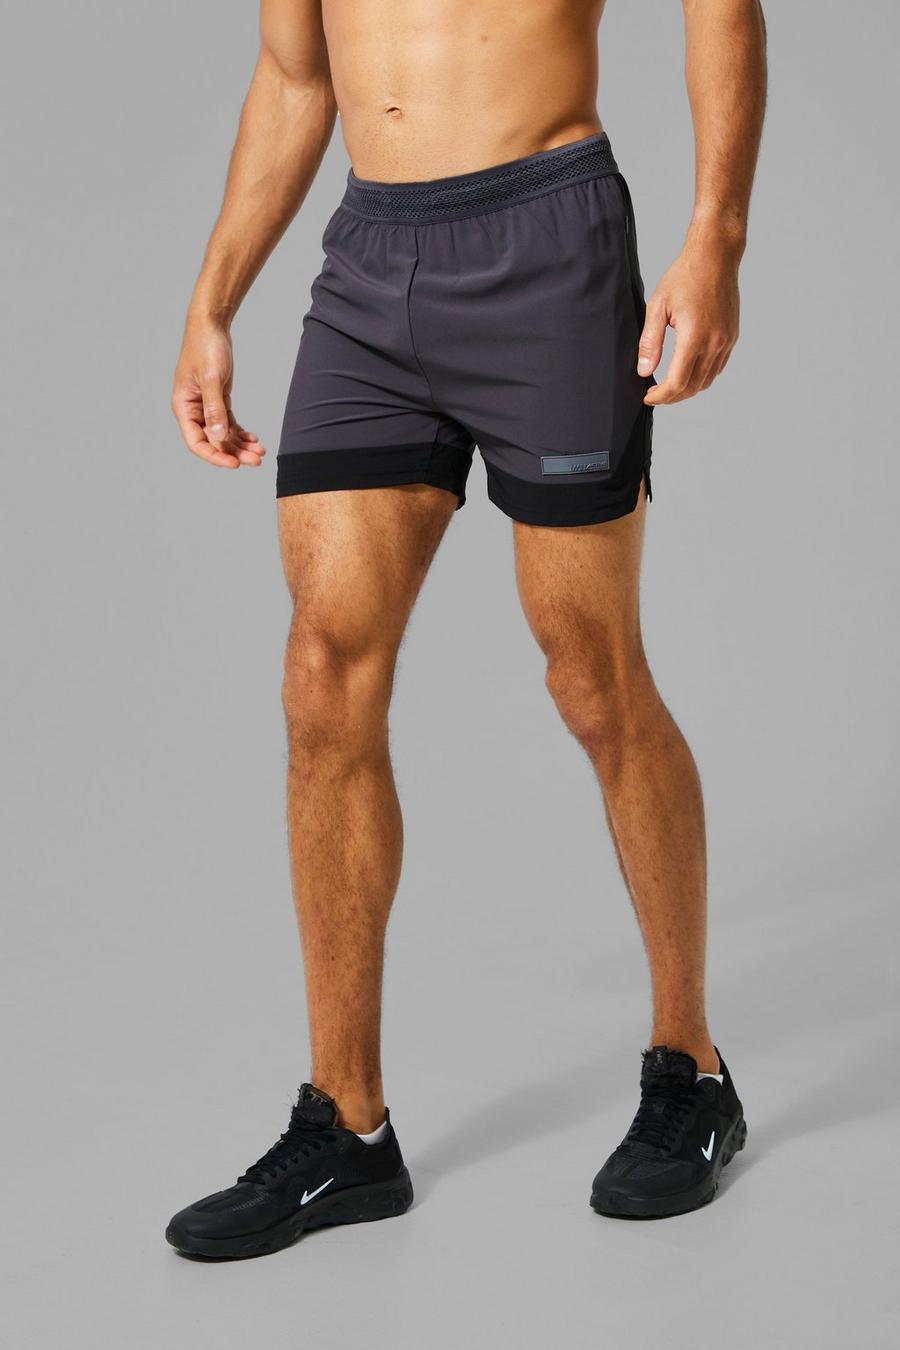 Pantaloncini da corsa Man Active con dettagli a contrasto, Charcoal grigio